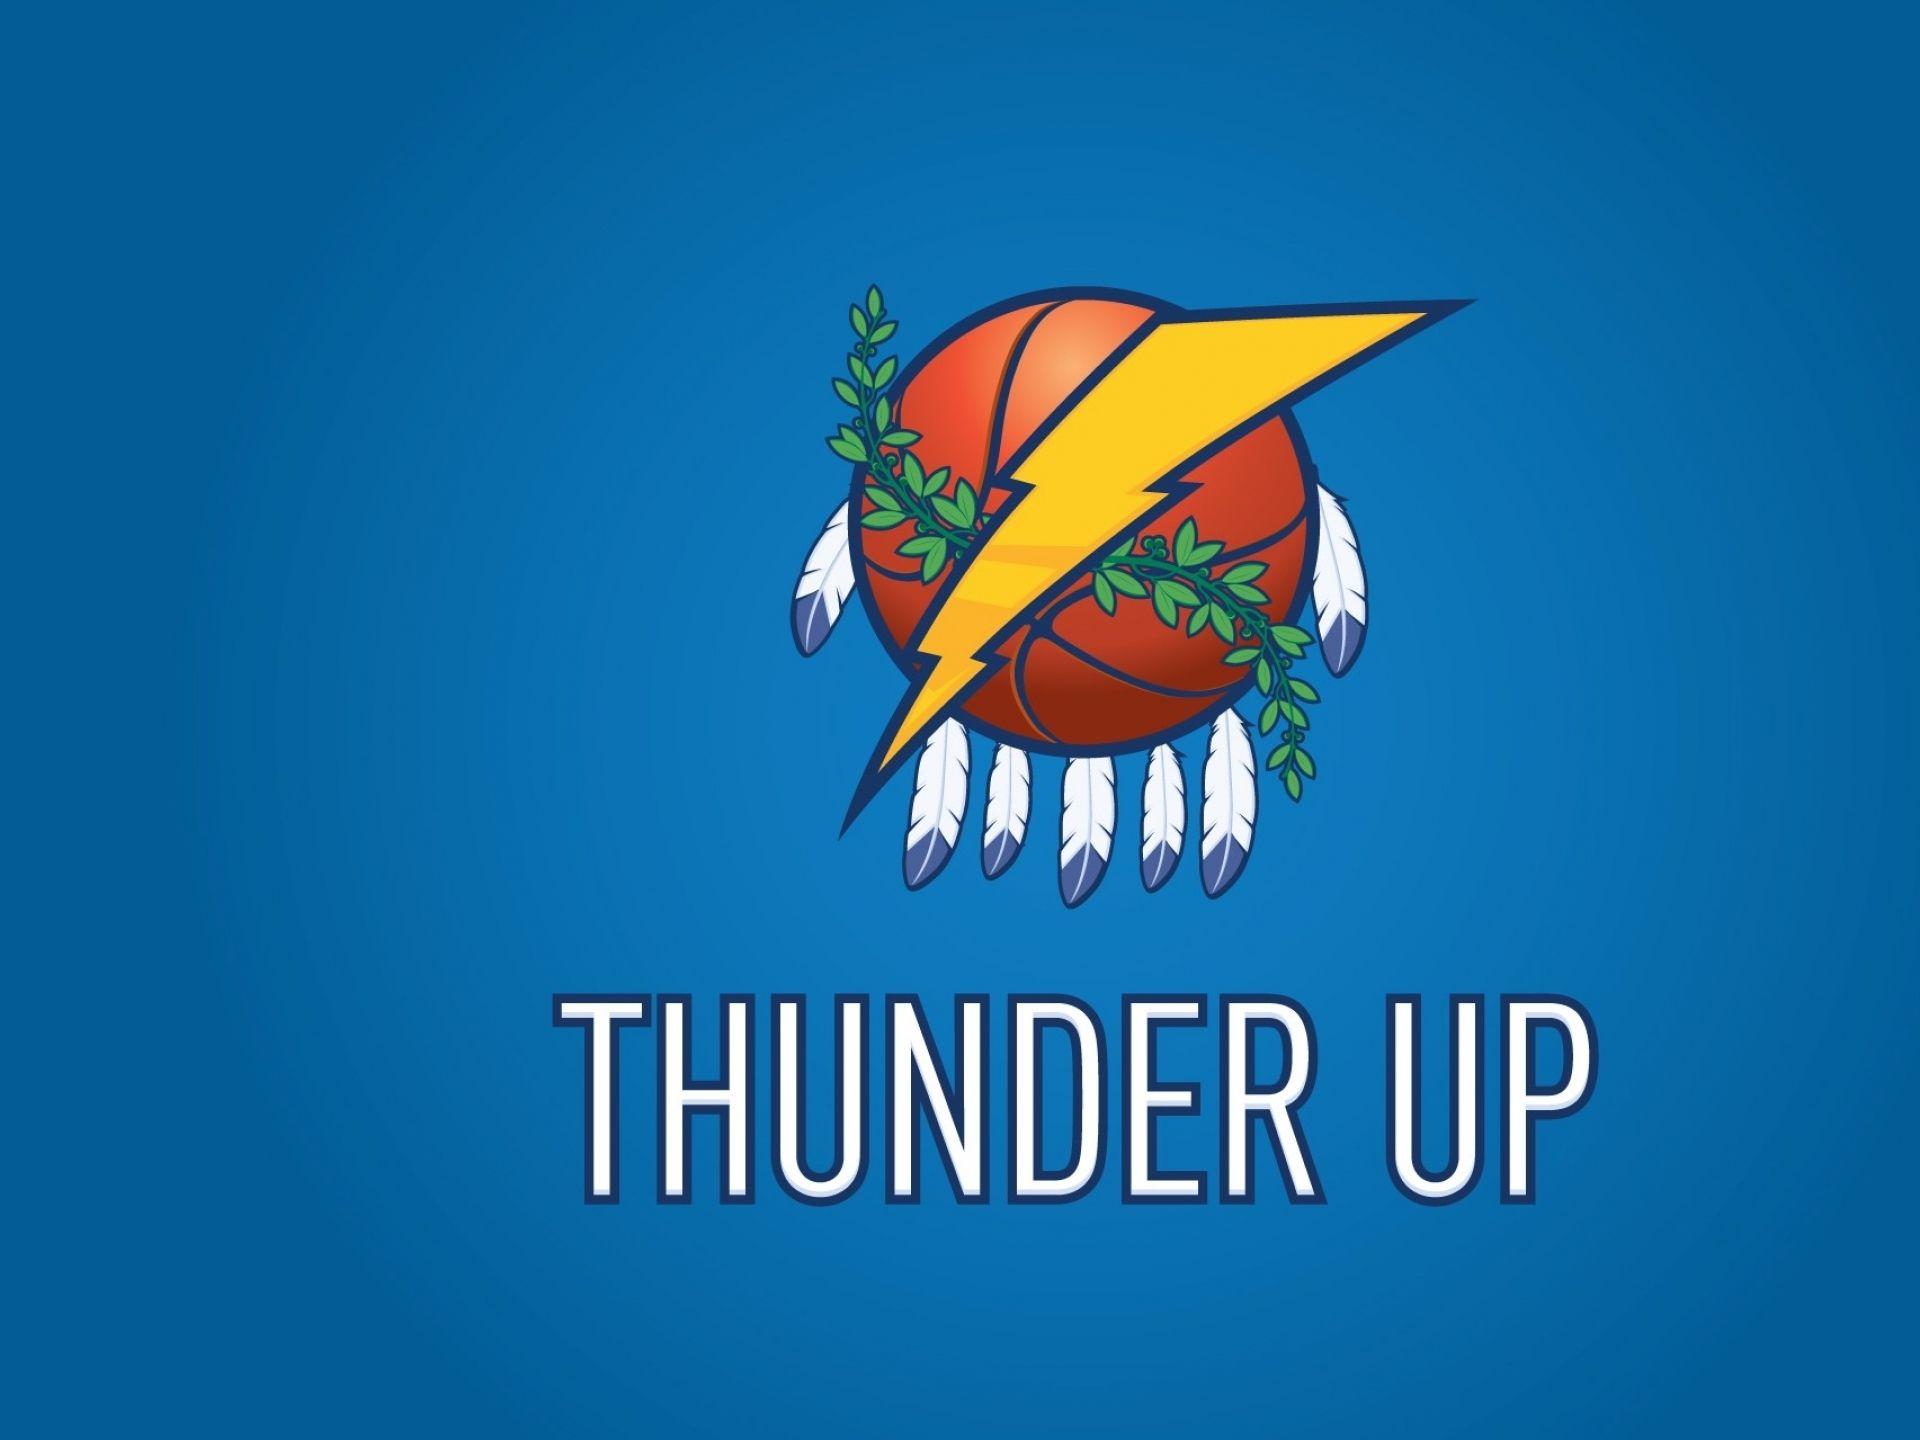 Oklahoma City Thunder Basketball Club Wallpaper 3. Basketball